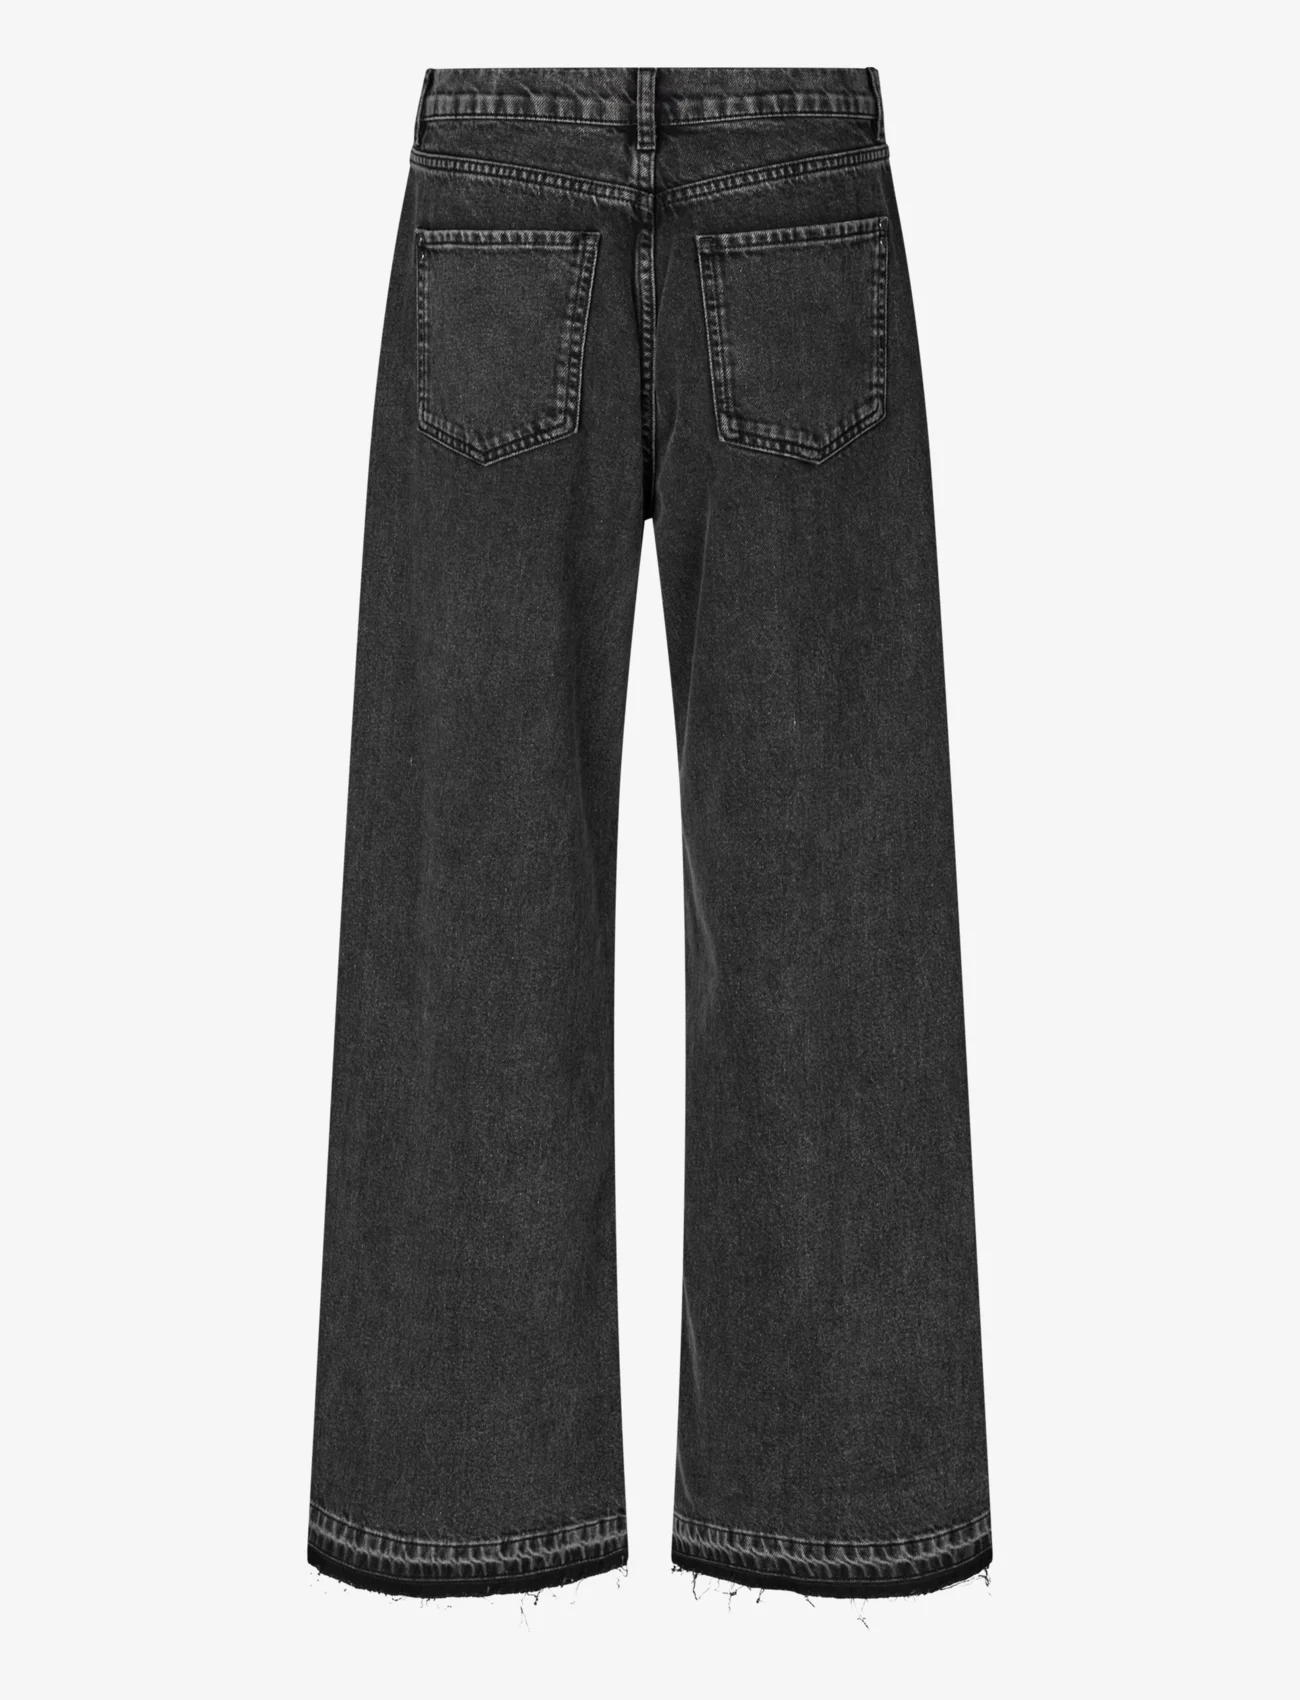 Custommade - Oteca - vide jeans - 993 meteorite - 1